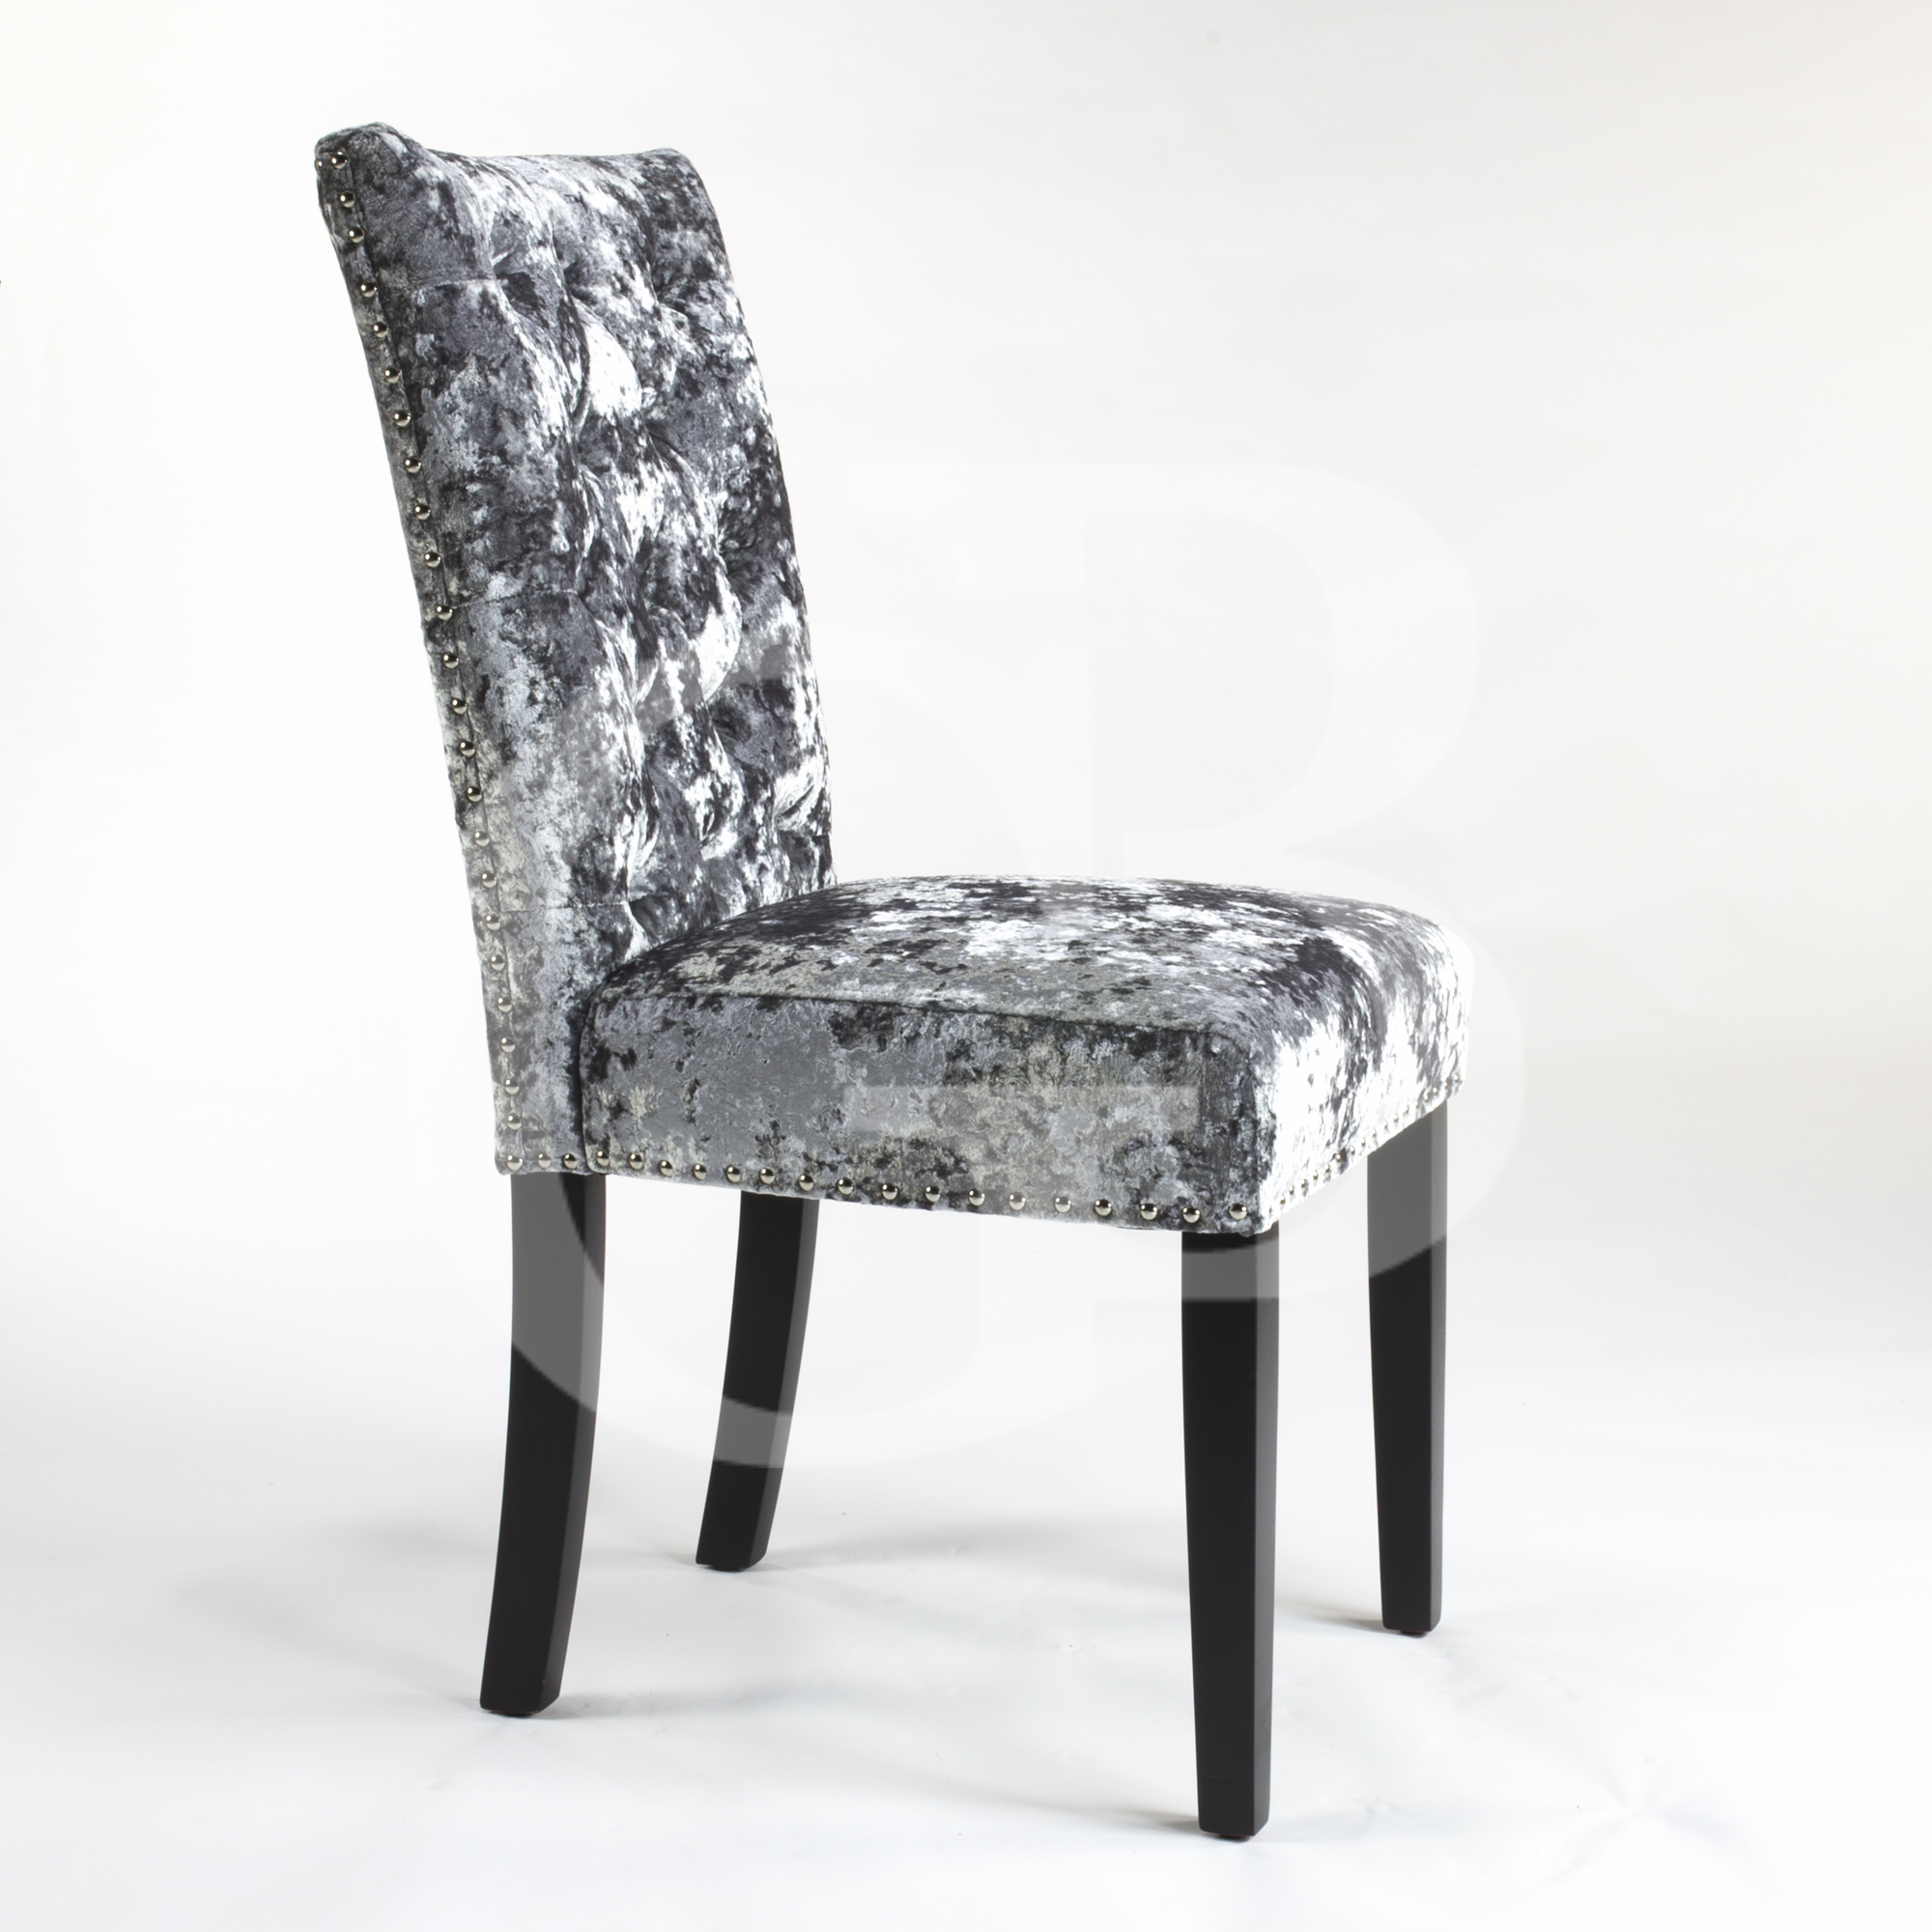 Crushed Velvet Chair - ashterdesign